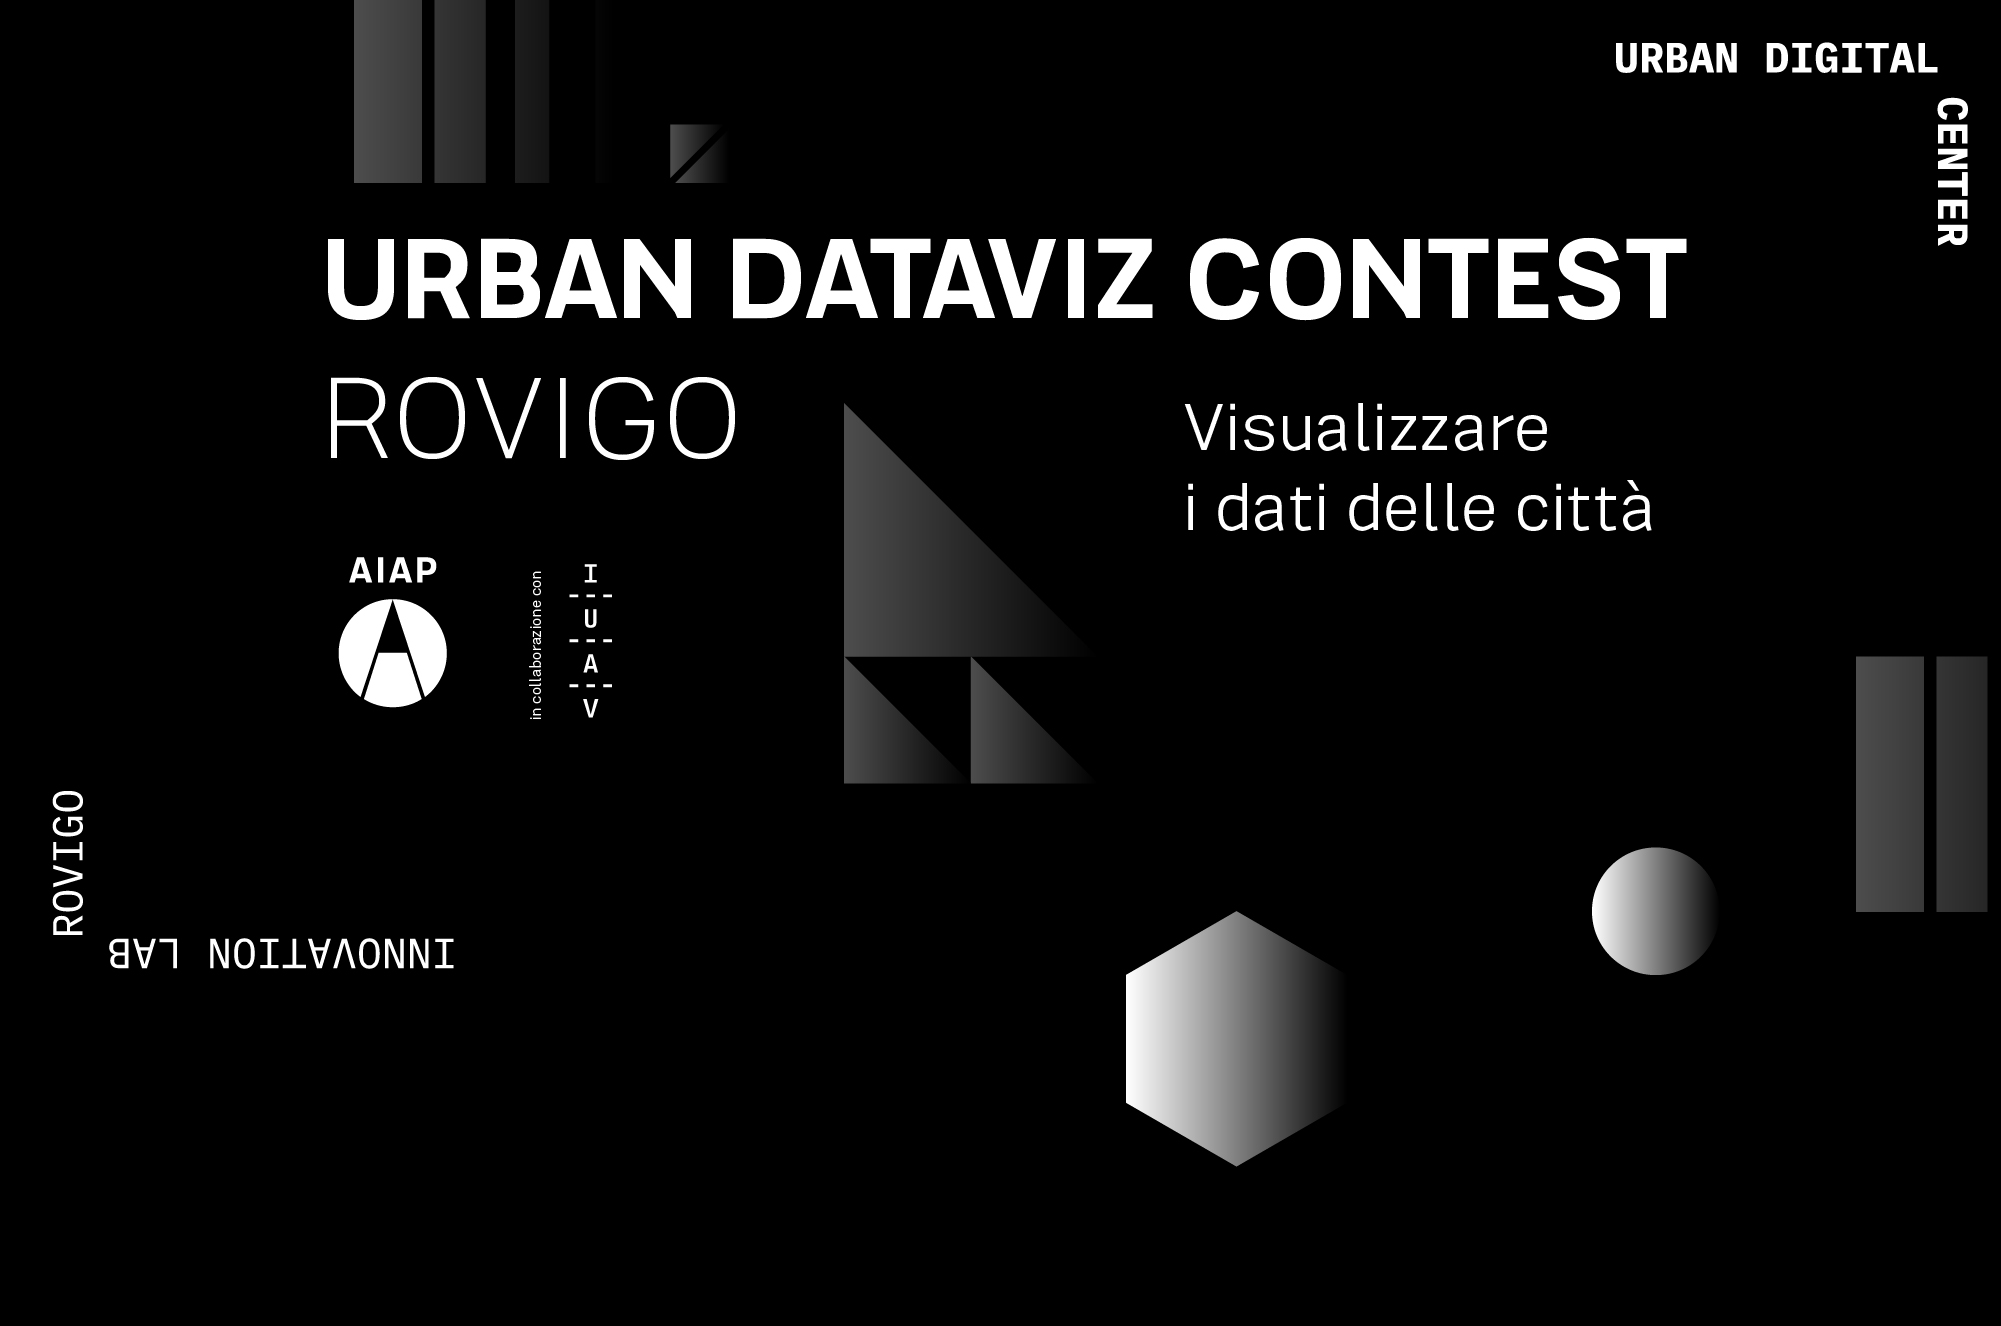 Urban Dataviz Contest Rovigo